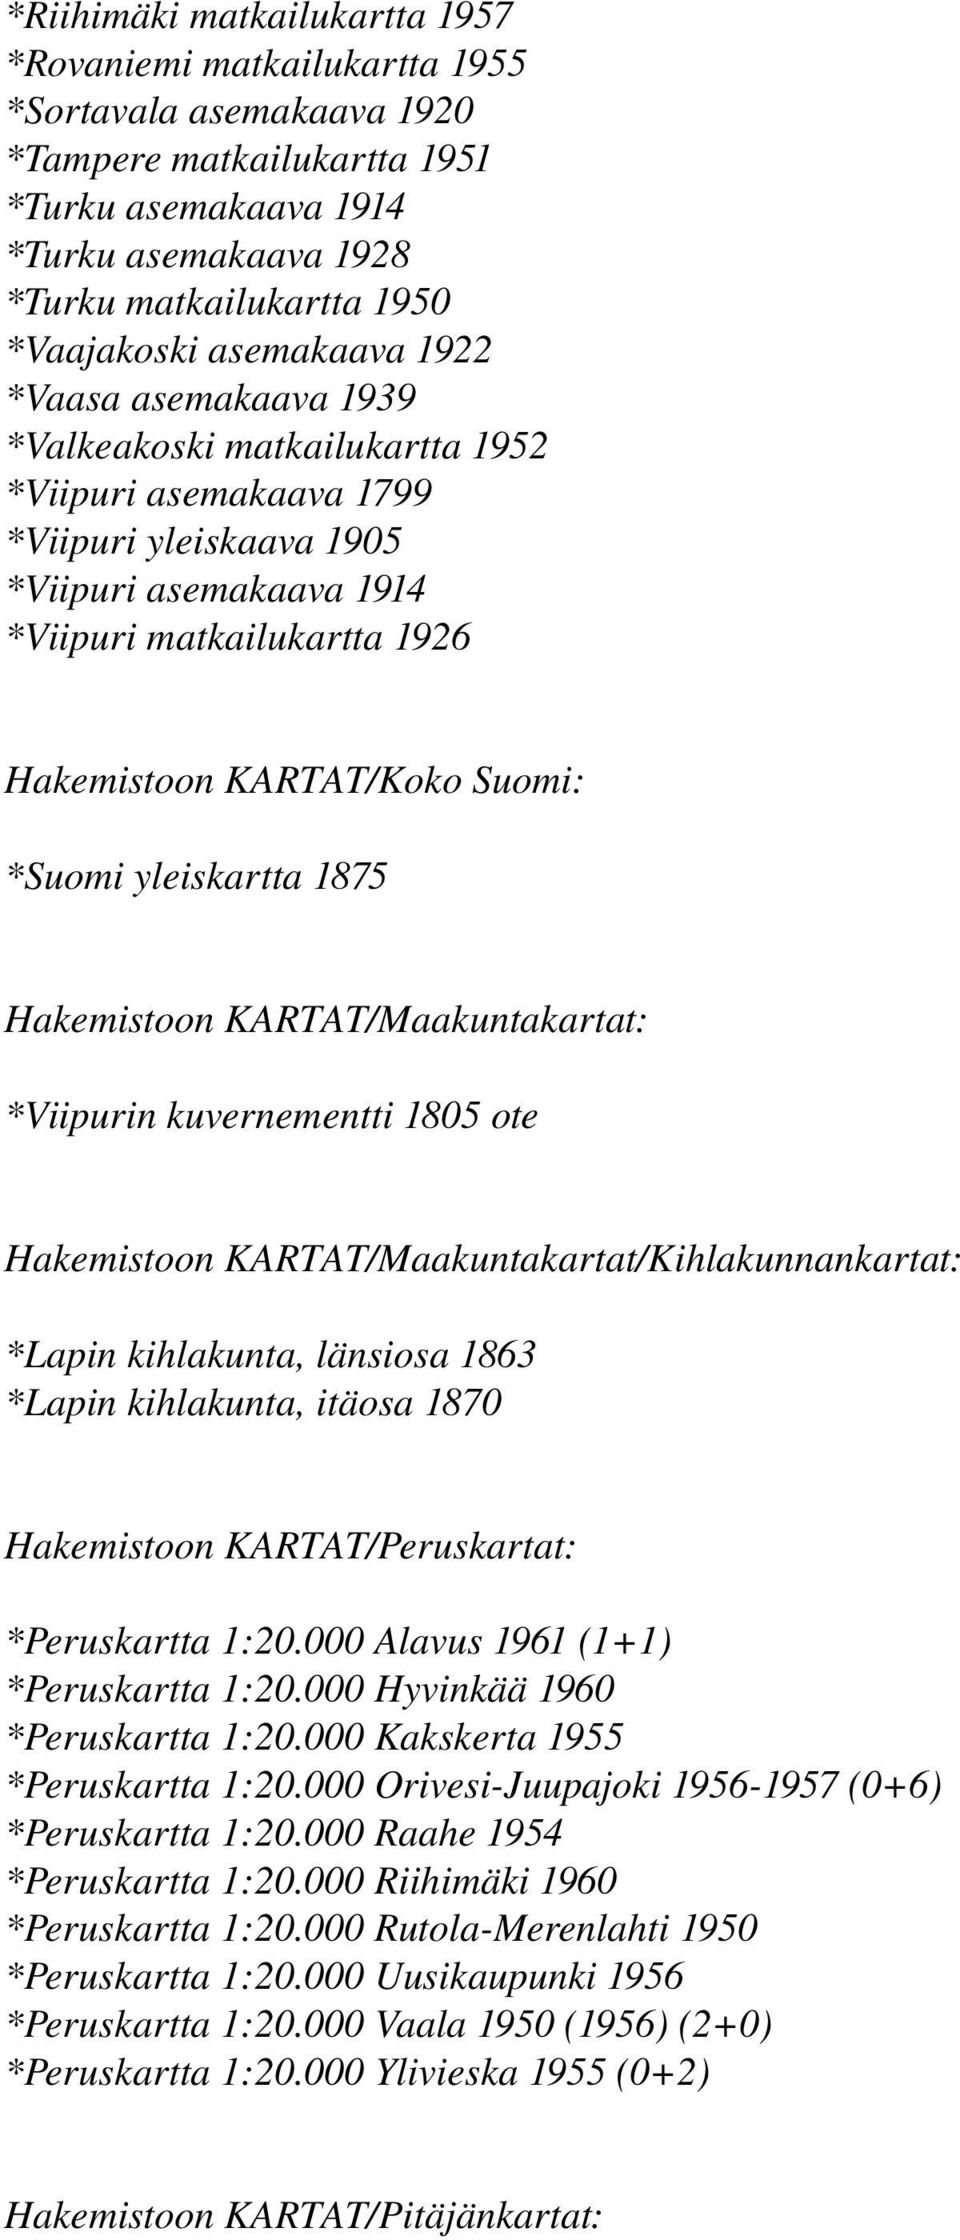 KARTAT/Koko Suomi: *Suomi yleiskartta 1875 Hakemistoon KARTAT/Maakuntakartat: *Viipurin kuvernementti 1805 ote Hakemistoon KARTAT/Maakuntakartat/Kihlakunnankartat: *Lapin kihlakunta, länsiosa 1863